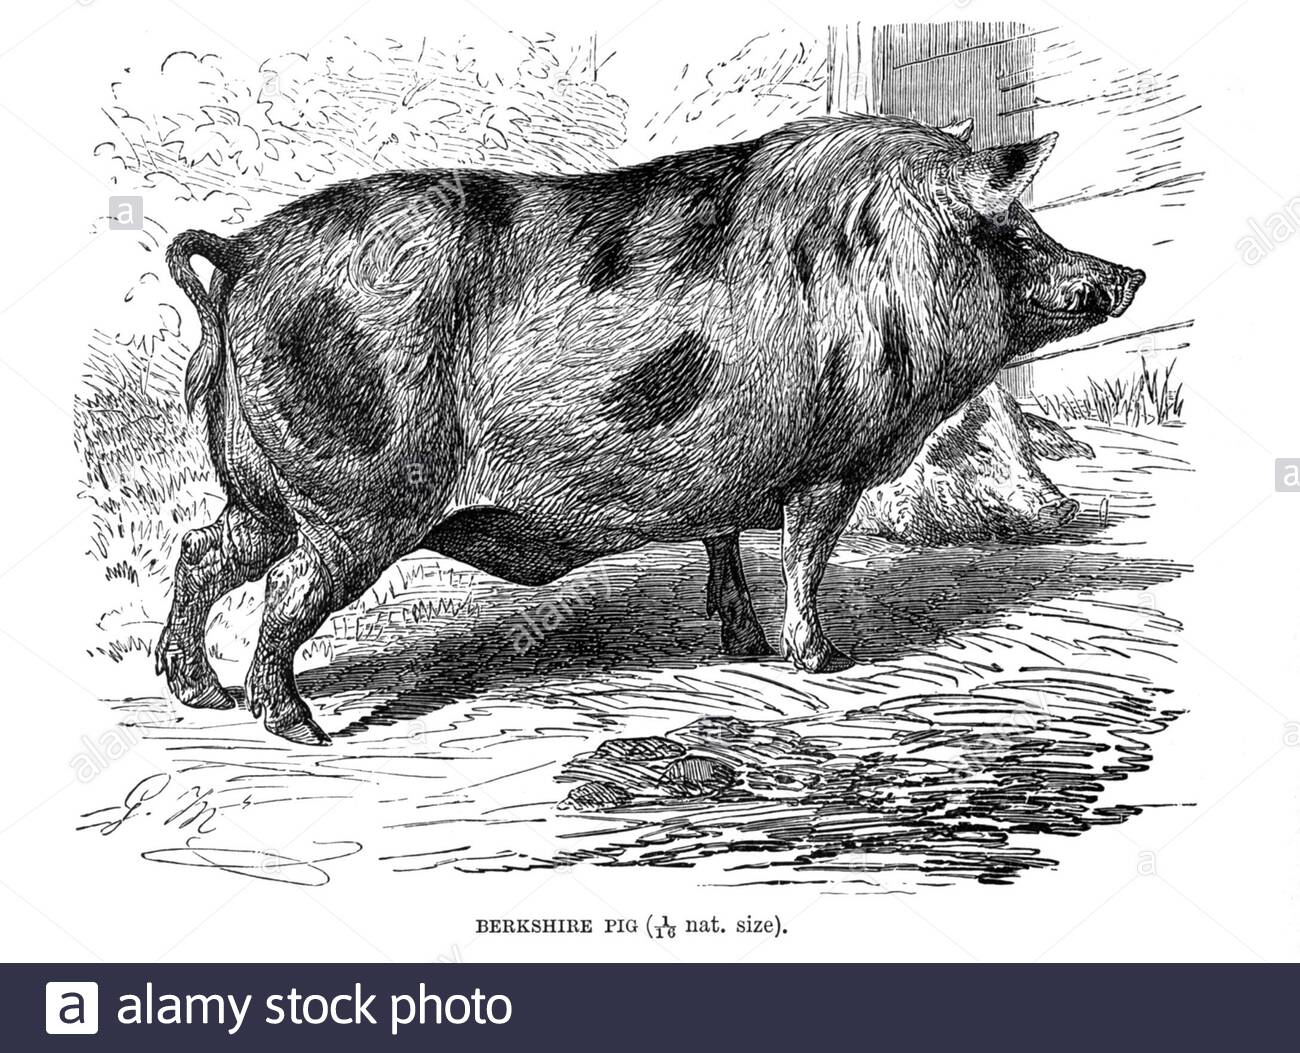 Berkshire Pig, illustrazione d'epoca del 1894 Foto Stock